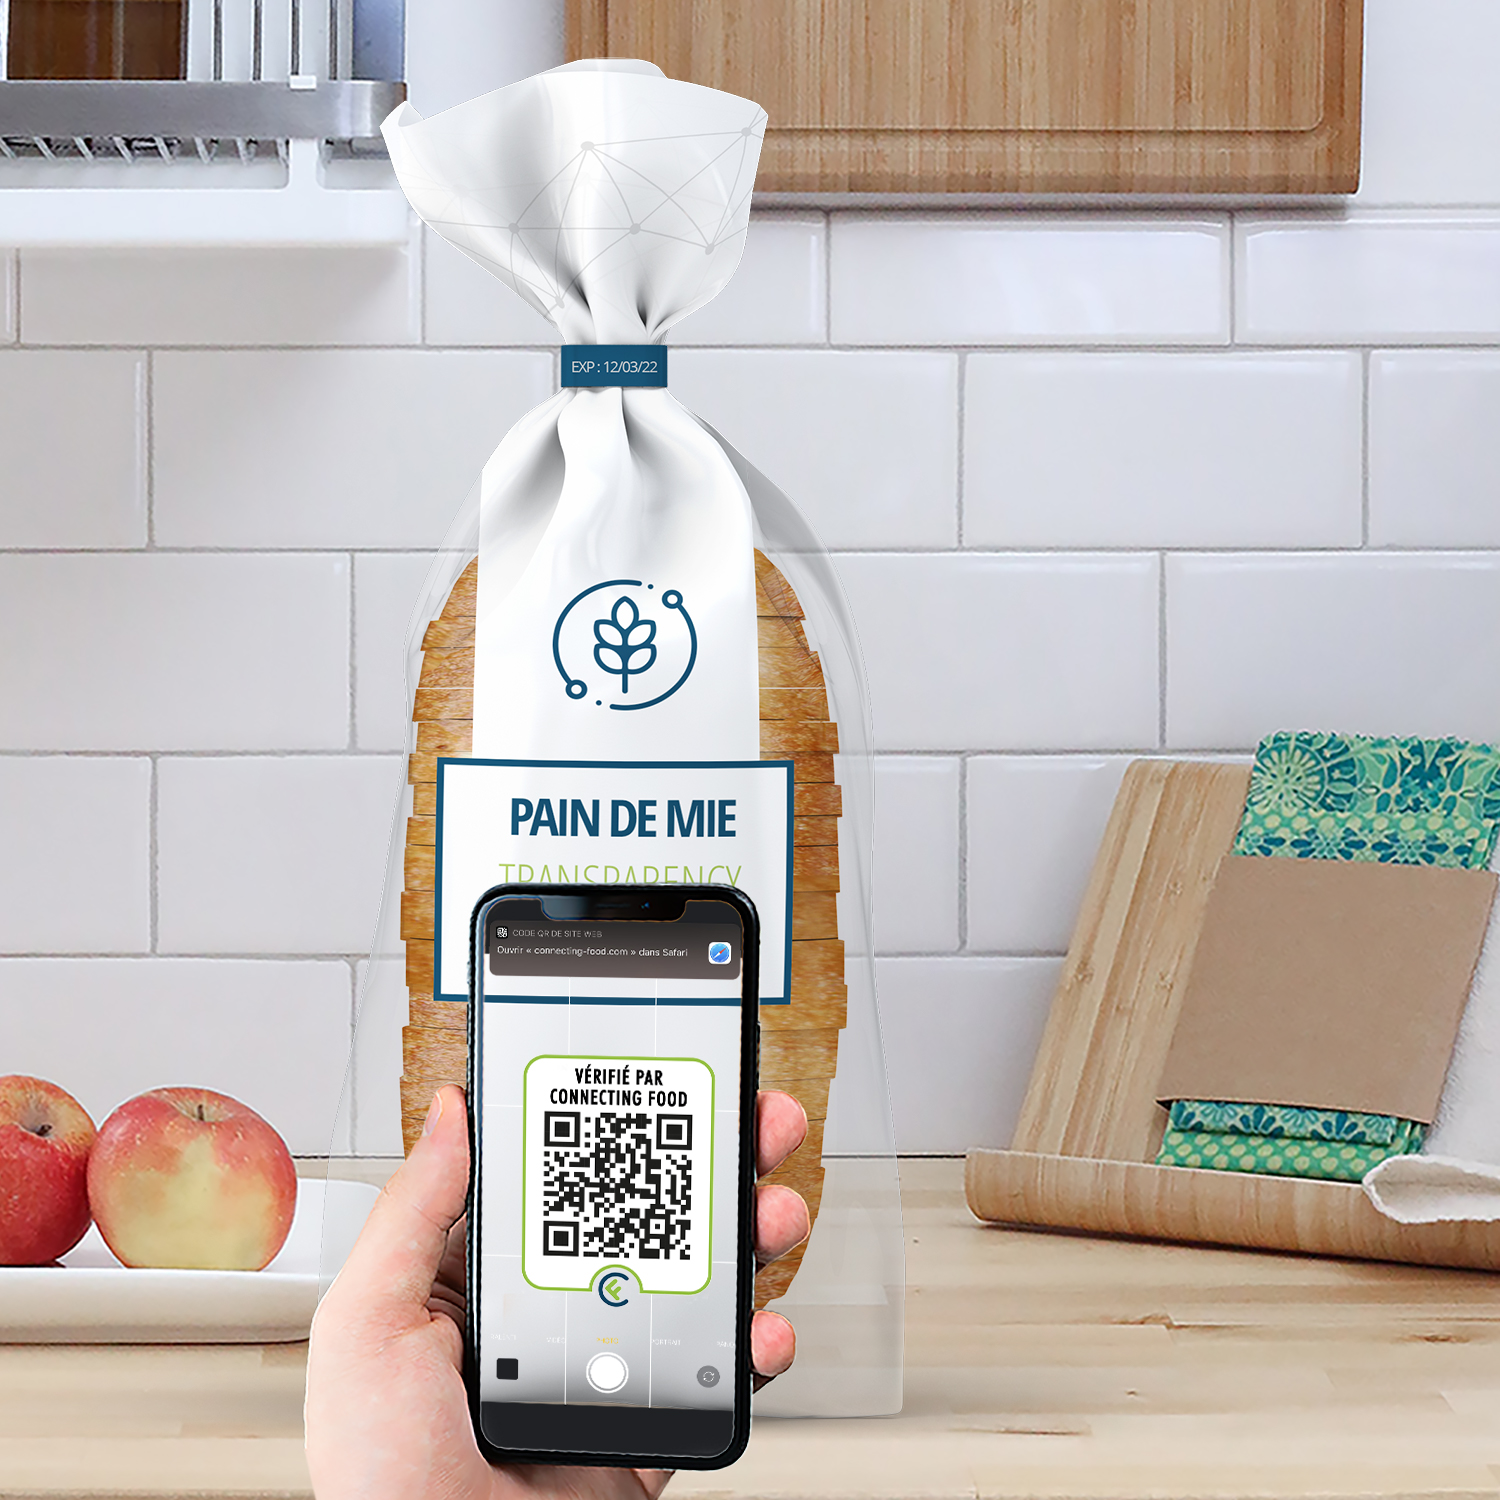 En scannant un QR code sur les produits labellisés Connecting food, le consommateur accède à tout l’historique du produit. - © C